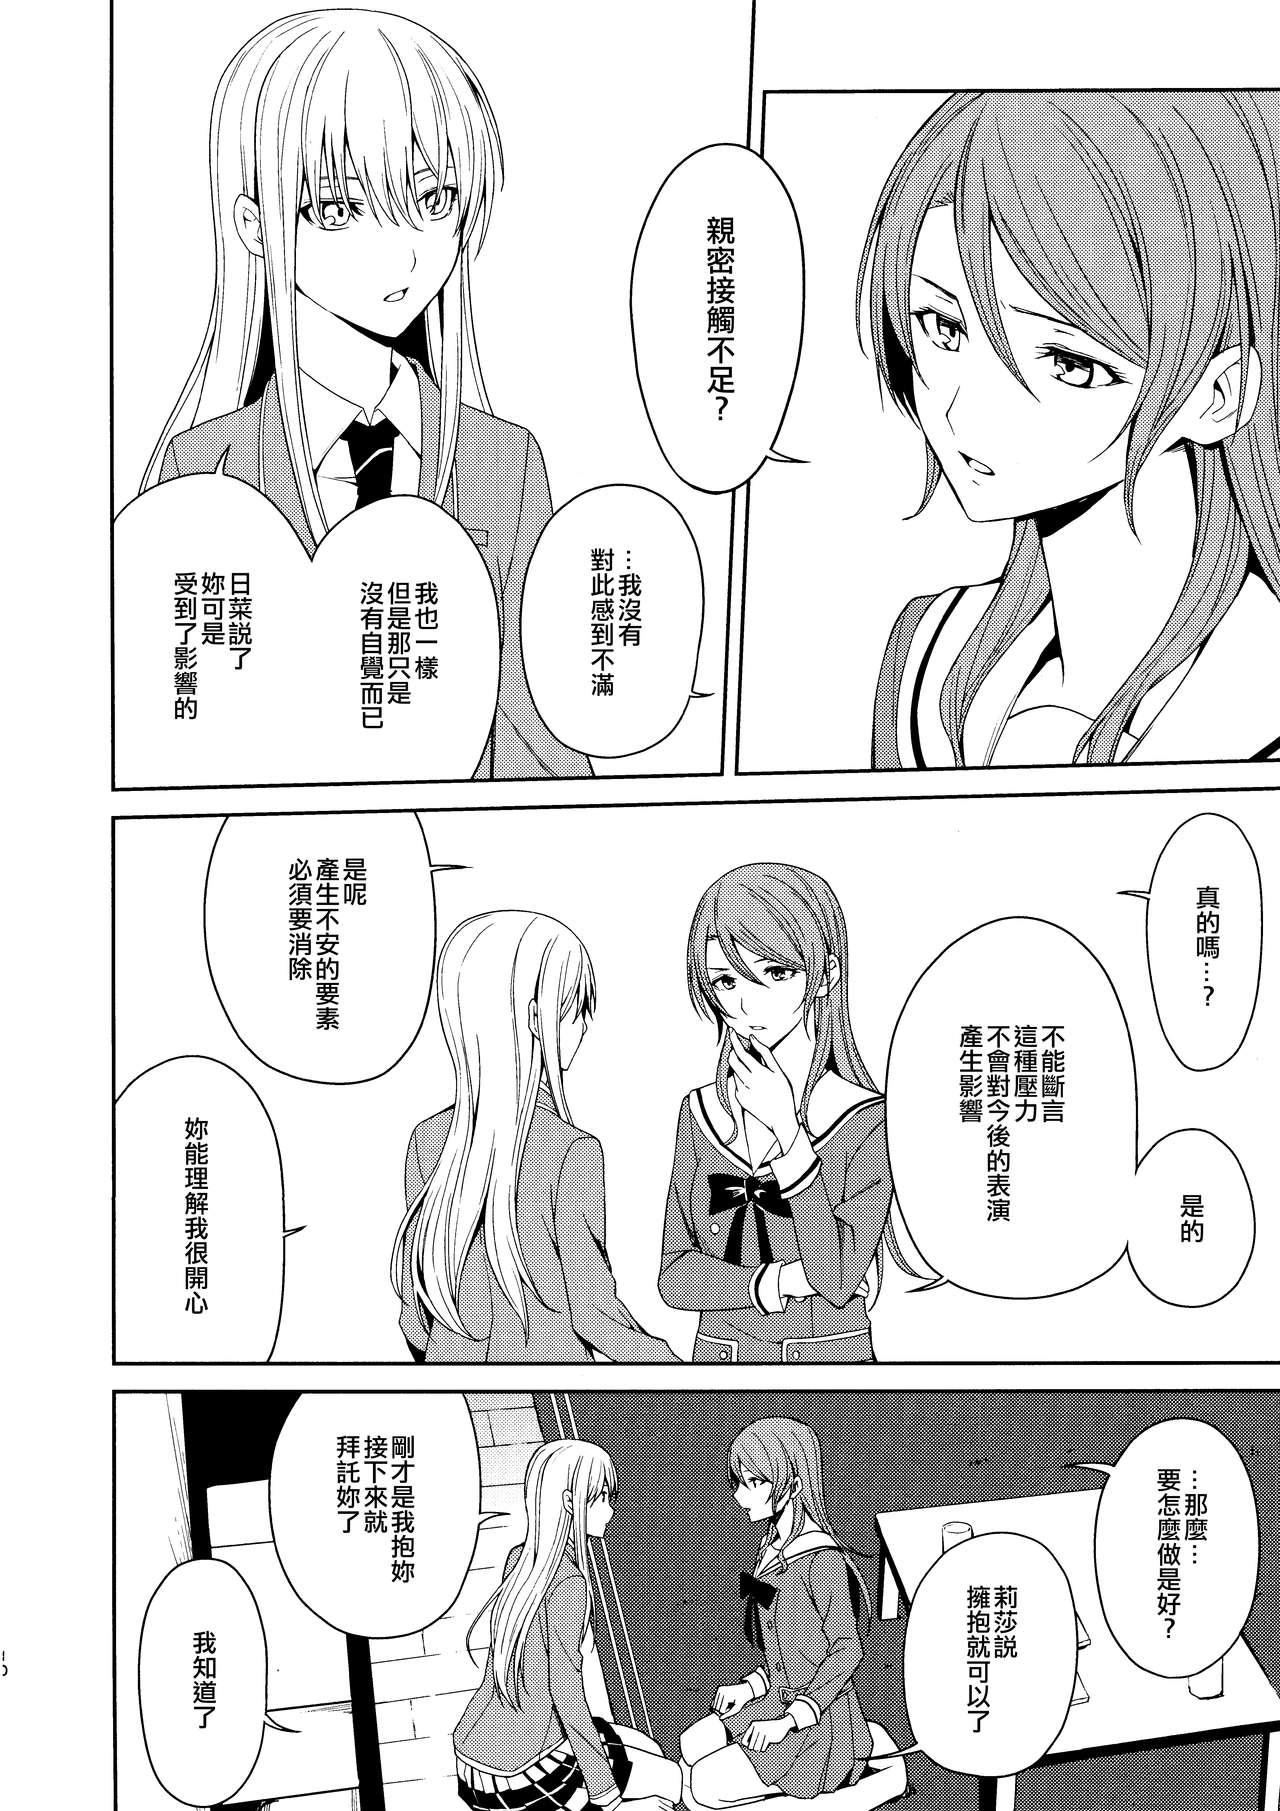 Titties Honnou no Seishikata | 控制本能的方法 - Bang dream English - Page 10